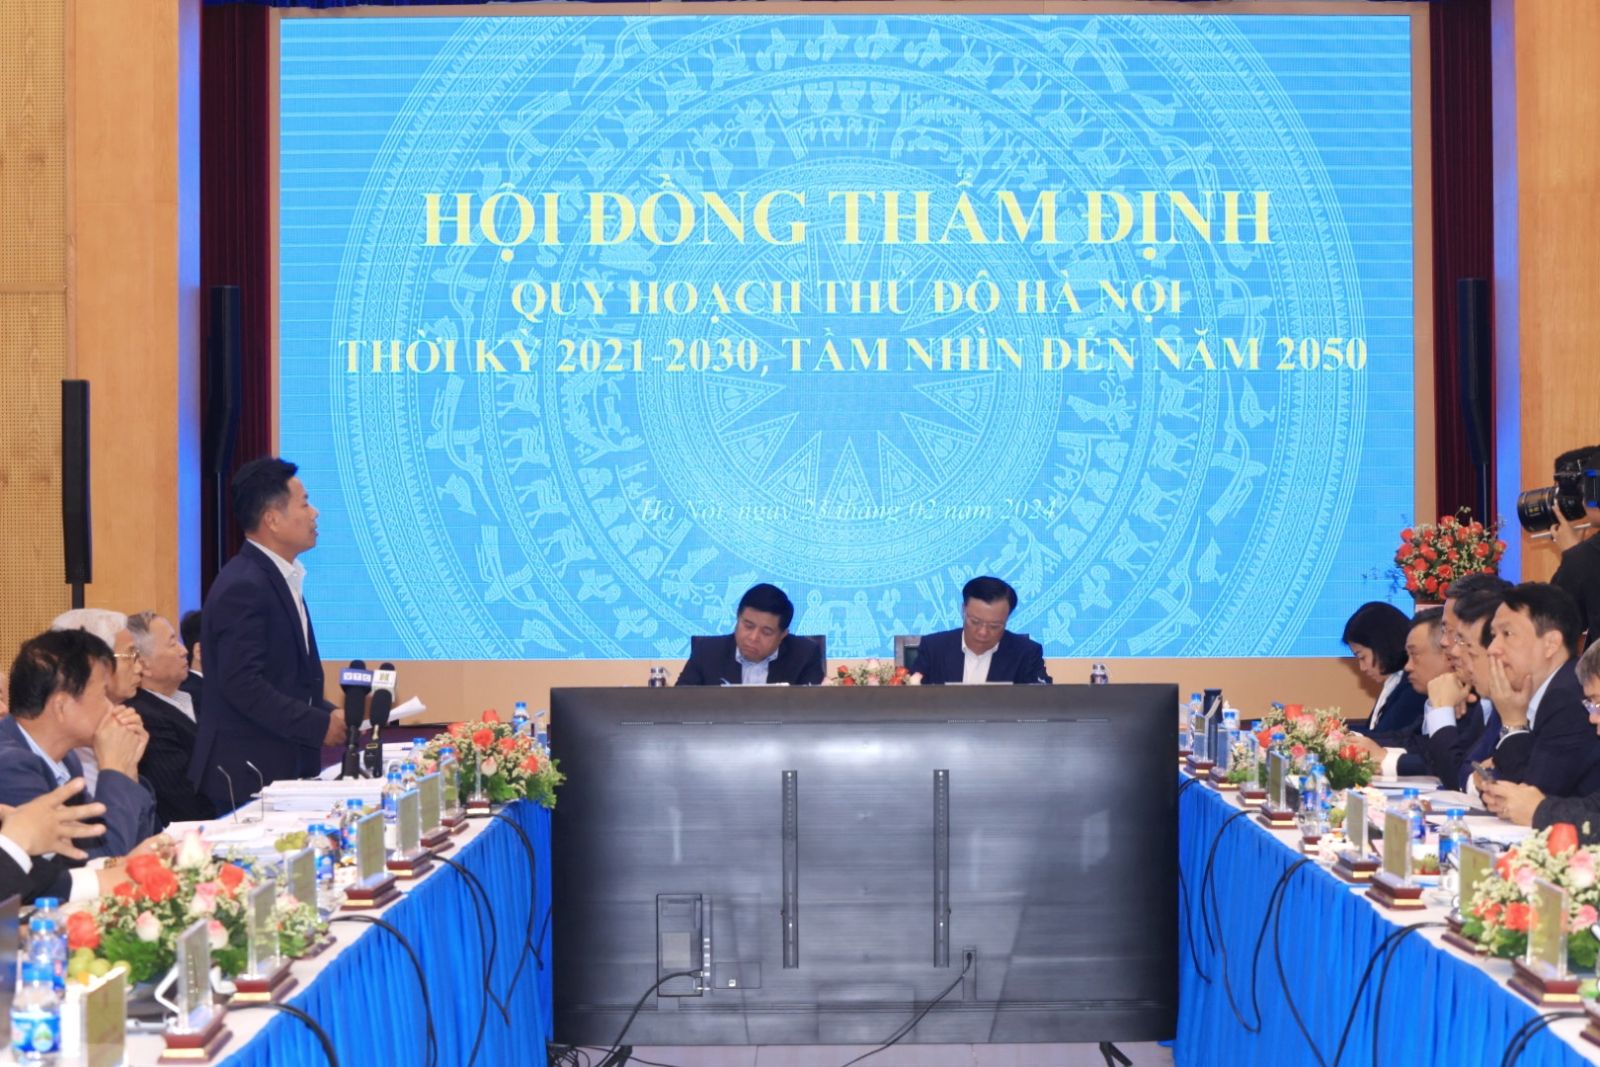 Phiên họp thẩm định Quy hoạch Thủ đô Hà Nội thời kỳ 2021-2030, tầm nhìn đến năm 2050